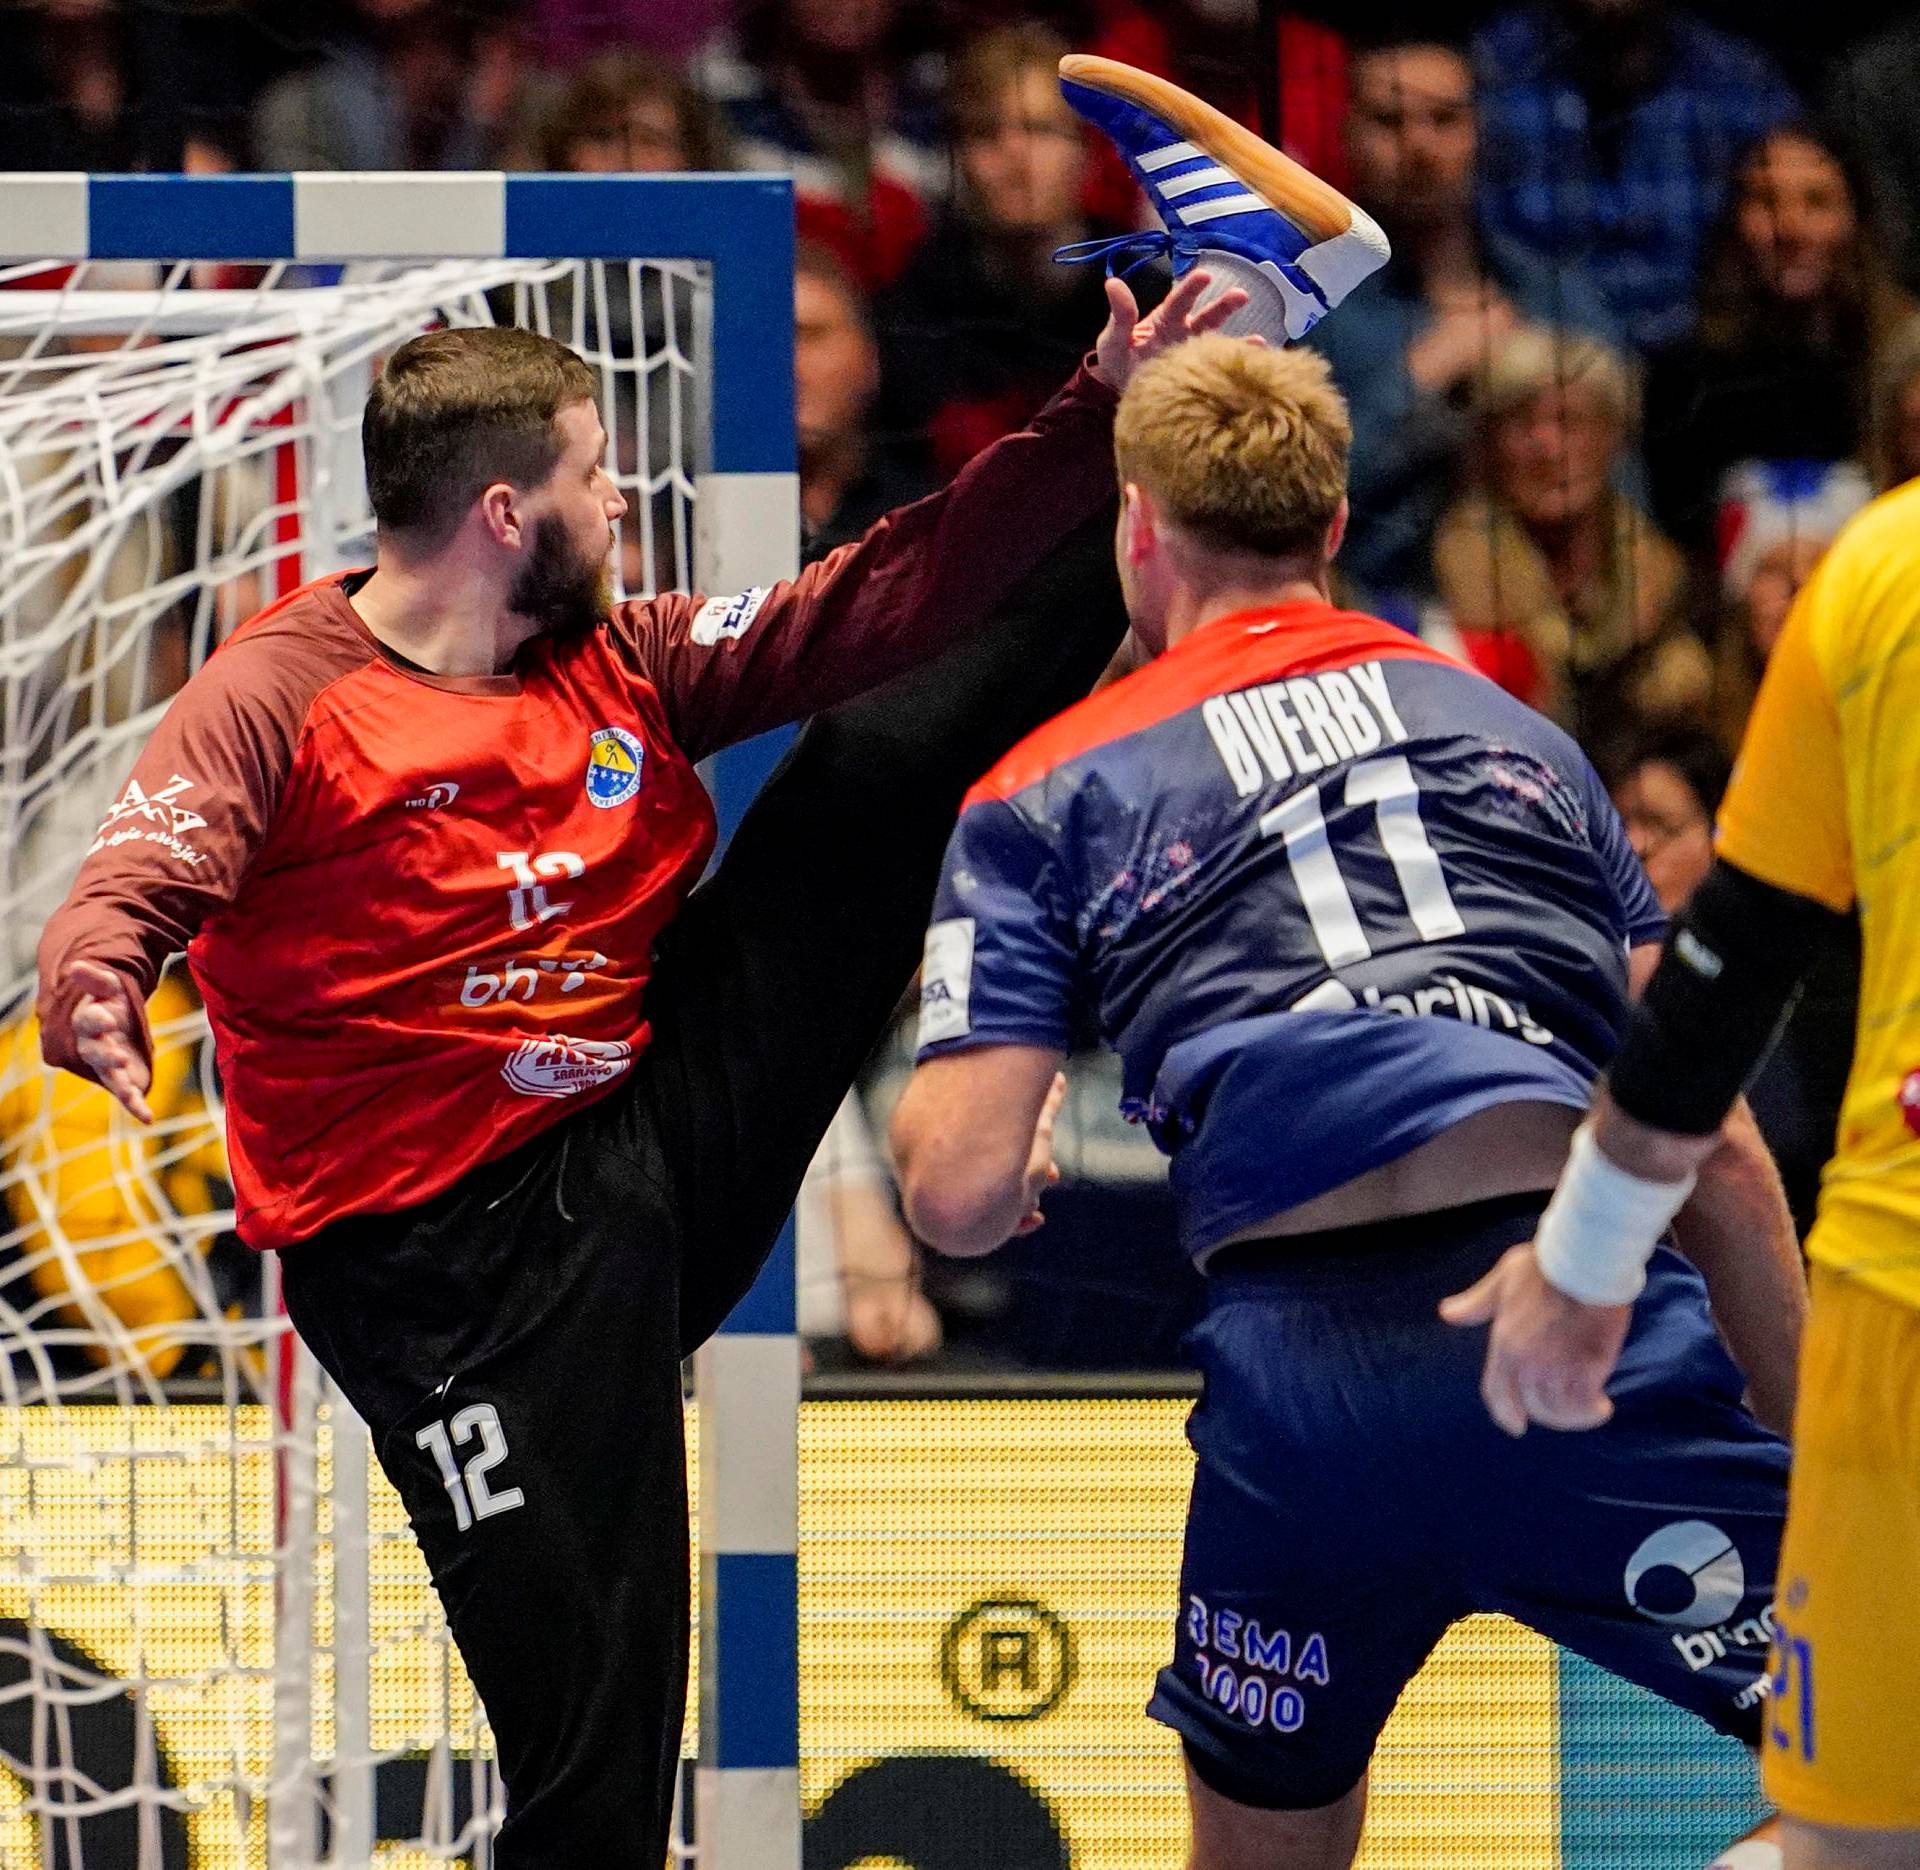 2020 Men's EHF European Handball Championship